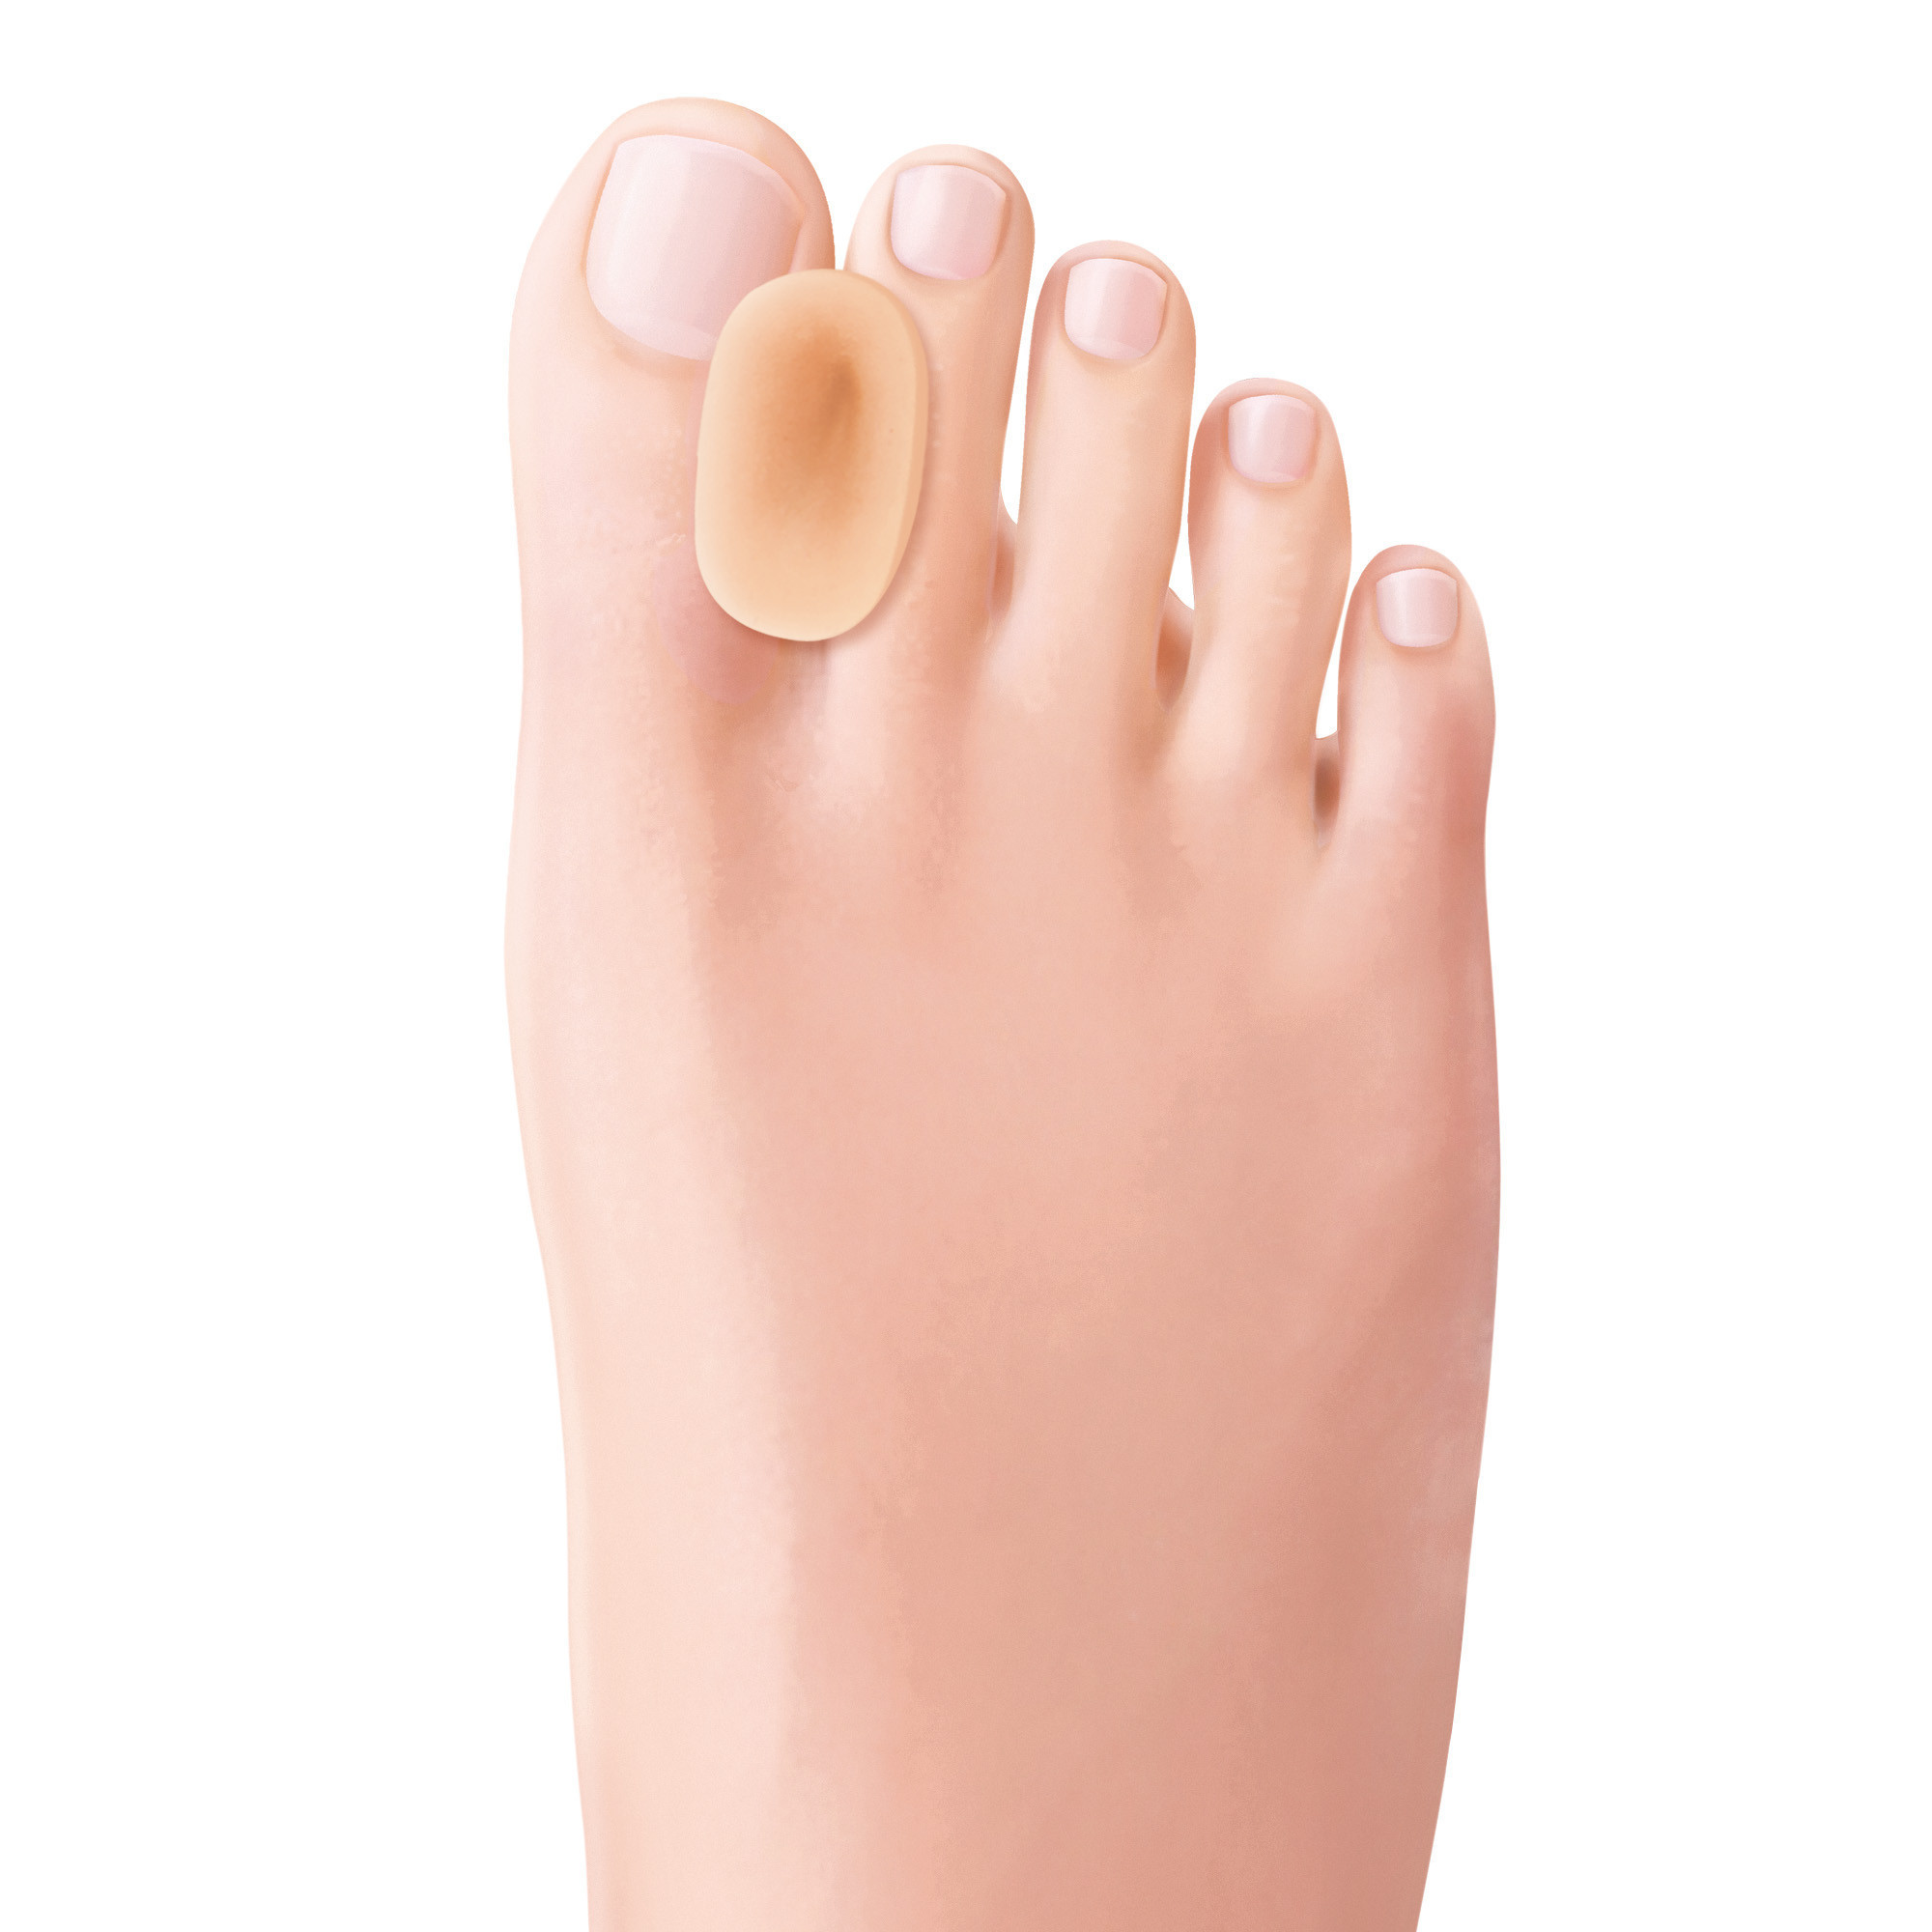 Divaricatore per dita dei piedi in Tecniwork Polymer Gel color pelle Bio-Skin 1 pz